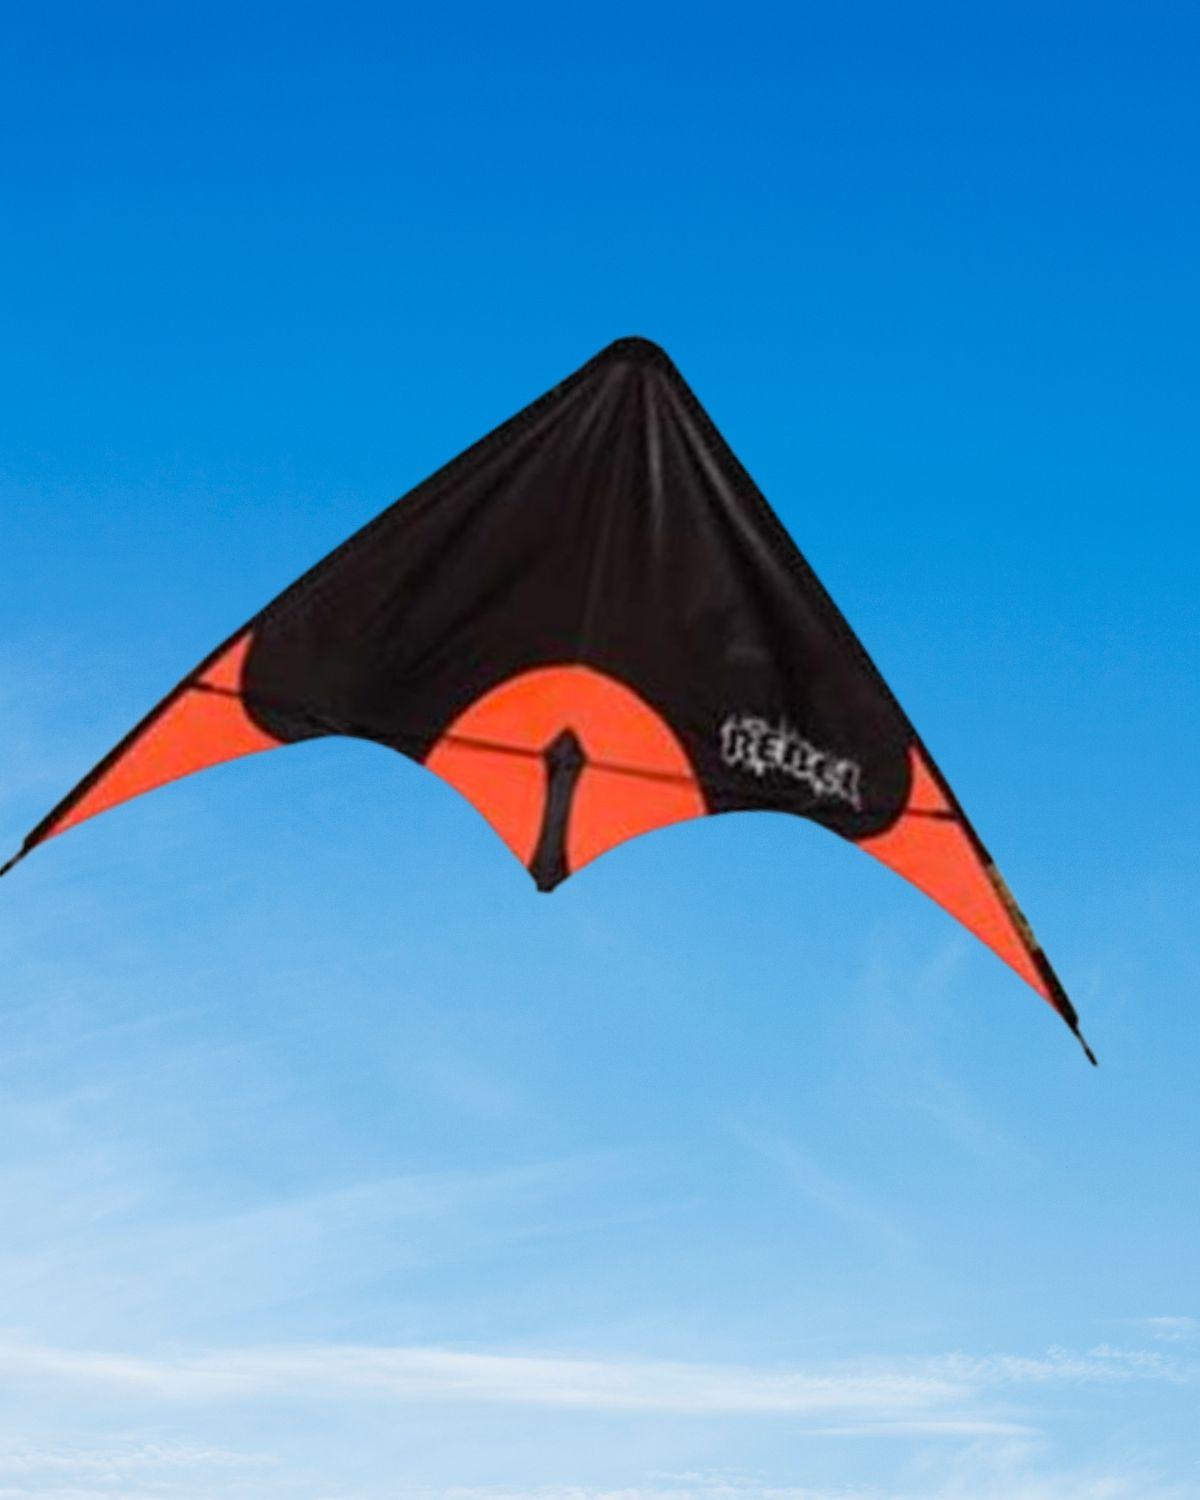 Orange and black Rebel sport kite.